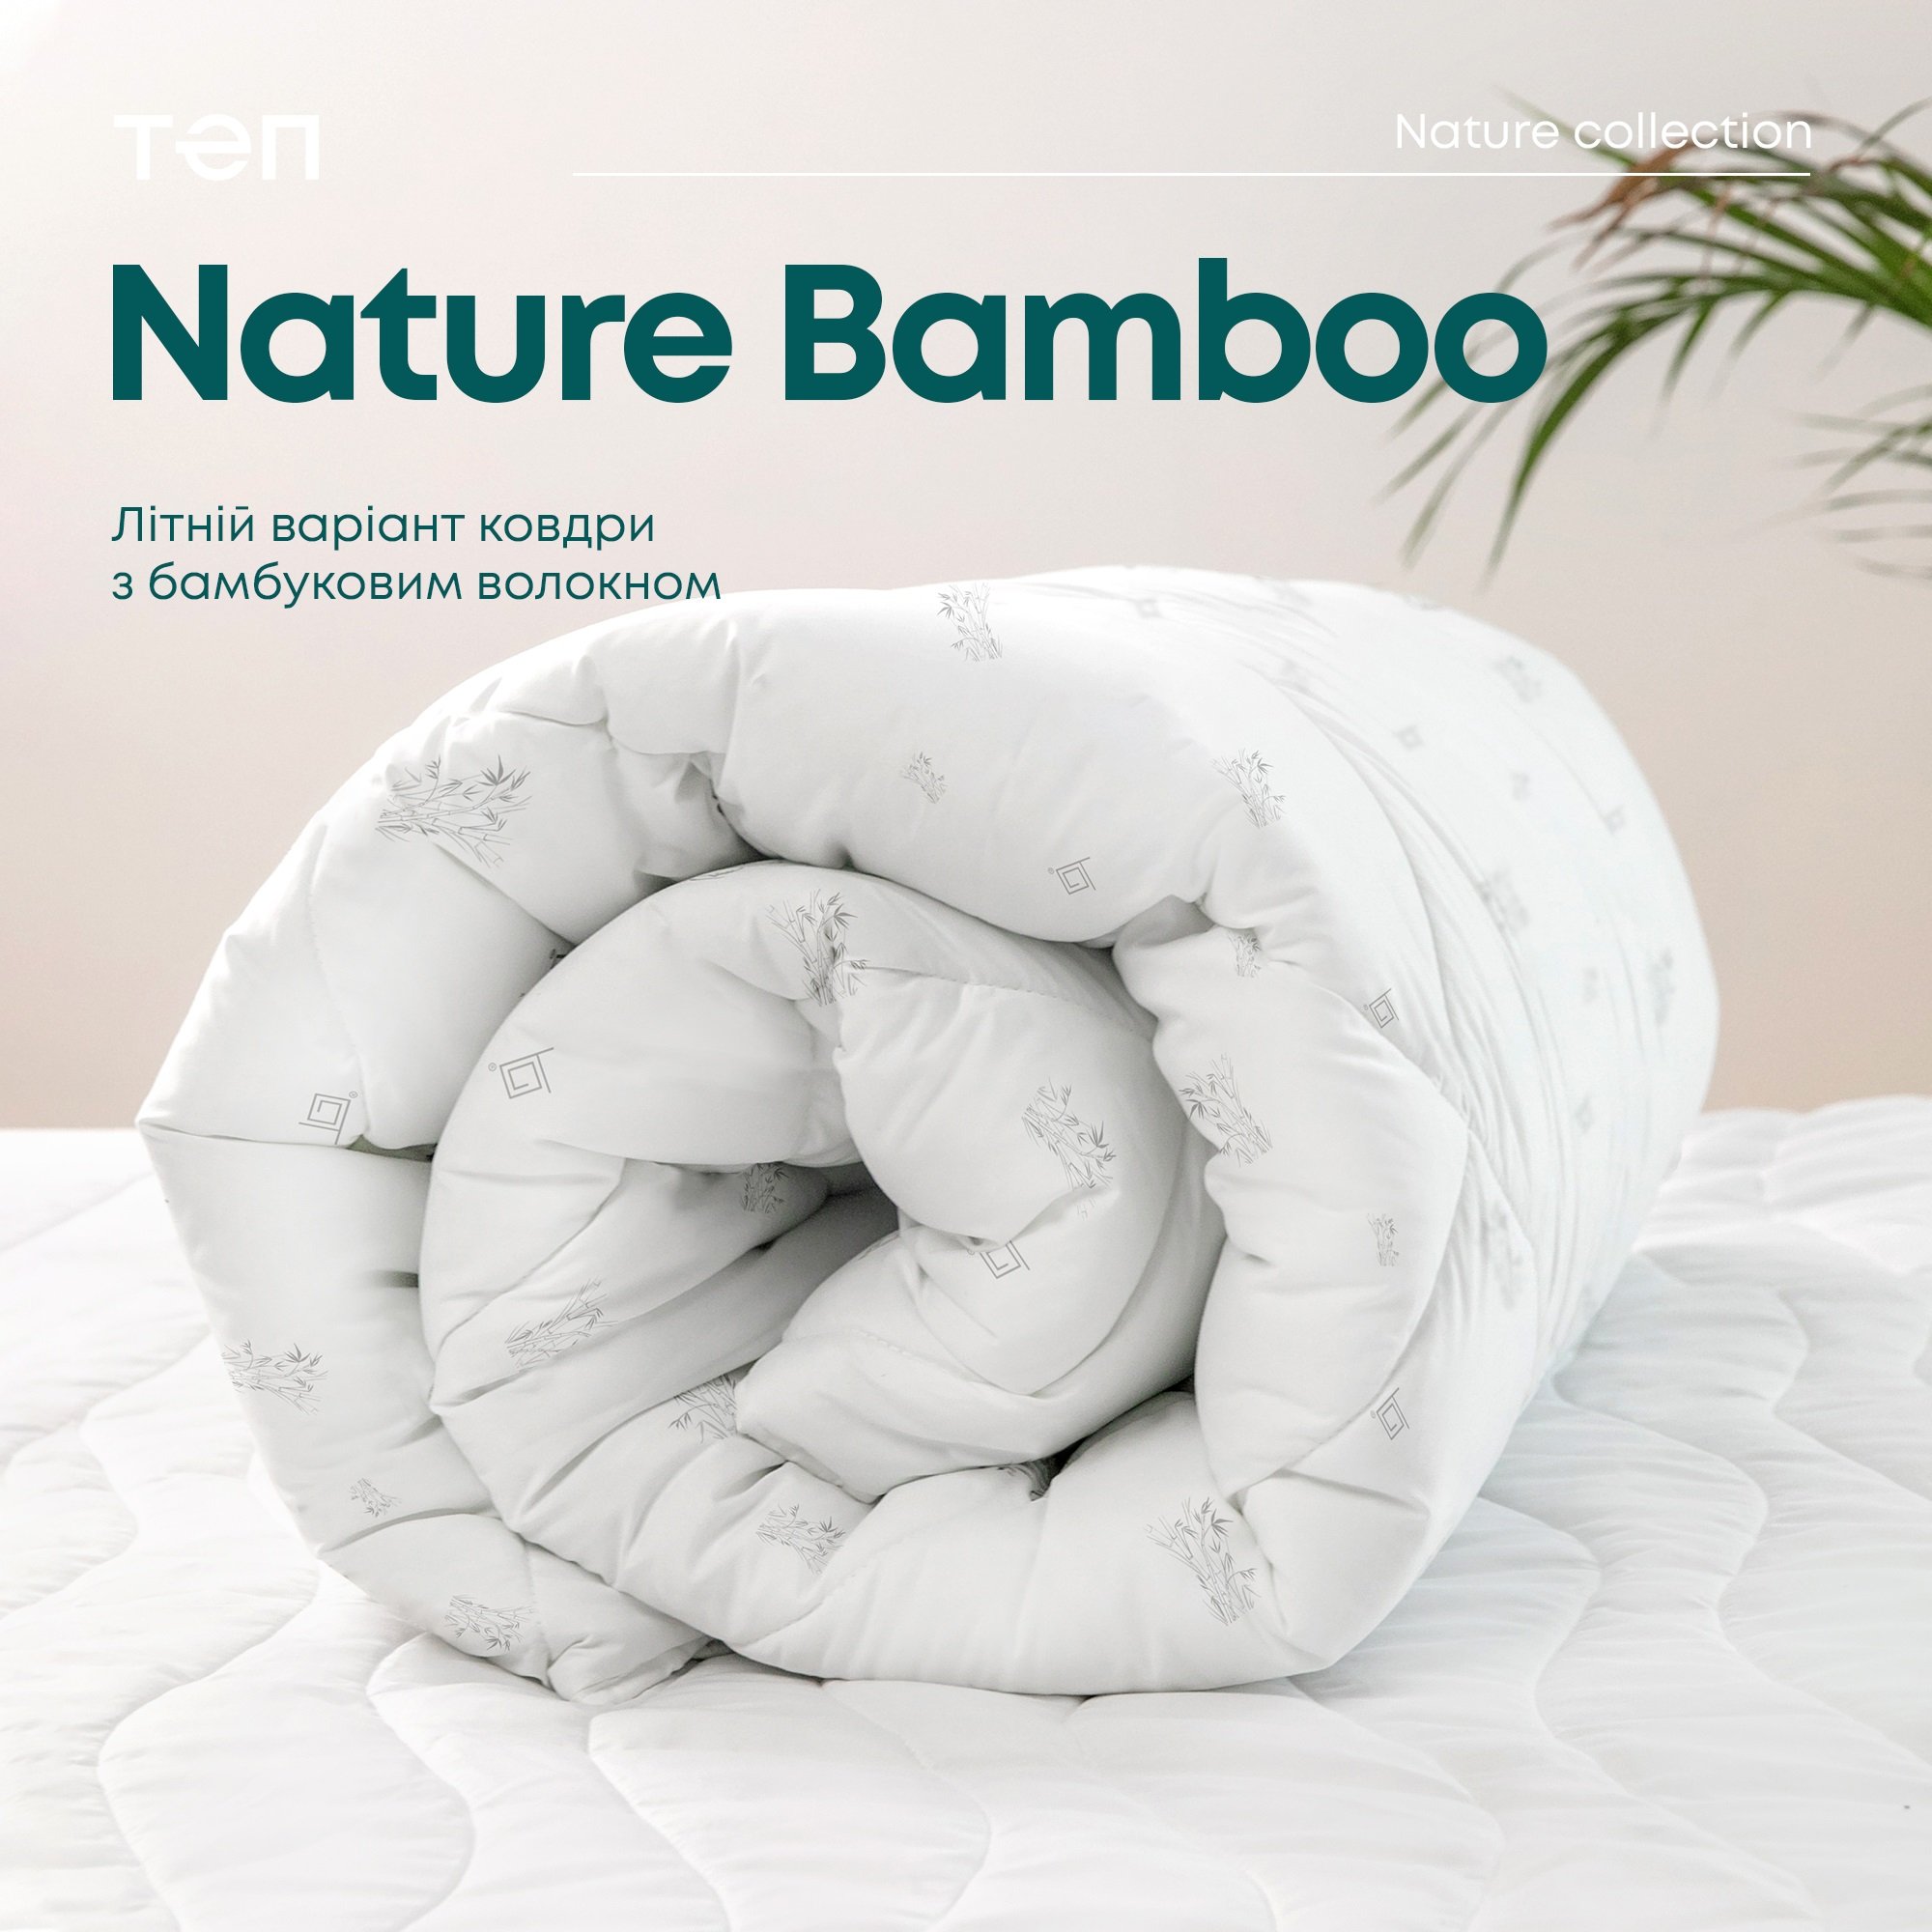 Одеяло ТЕП Природа Membrana Print Bamboo Summer Line 200х210 см белое (1-03998_00000) - фото 7